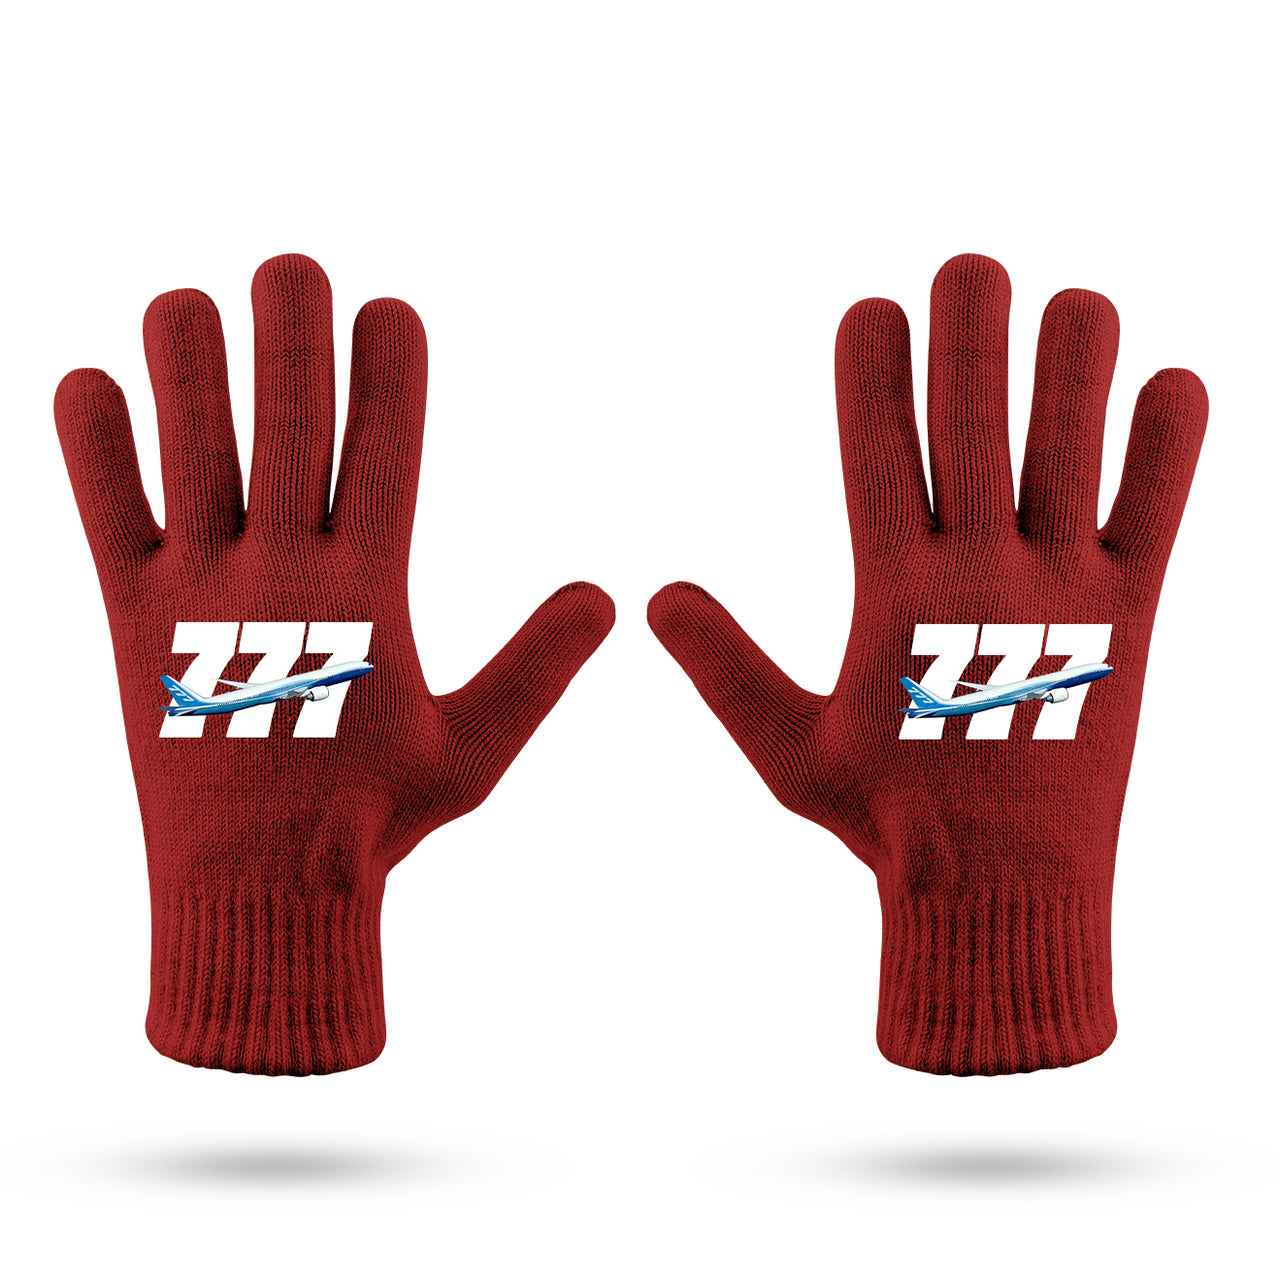 Super Boeing 777 Designed Gloves